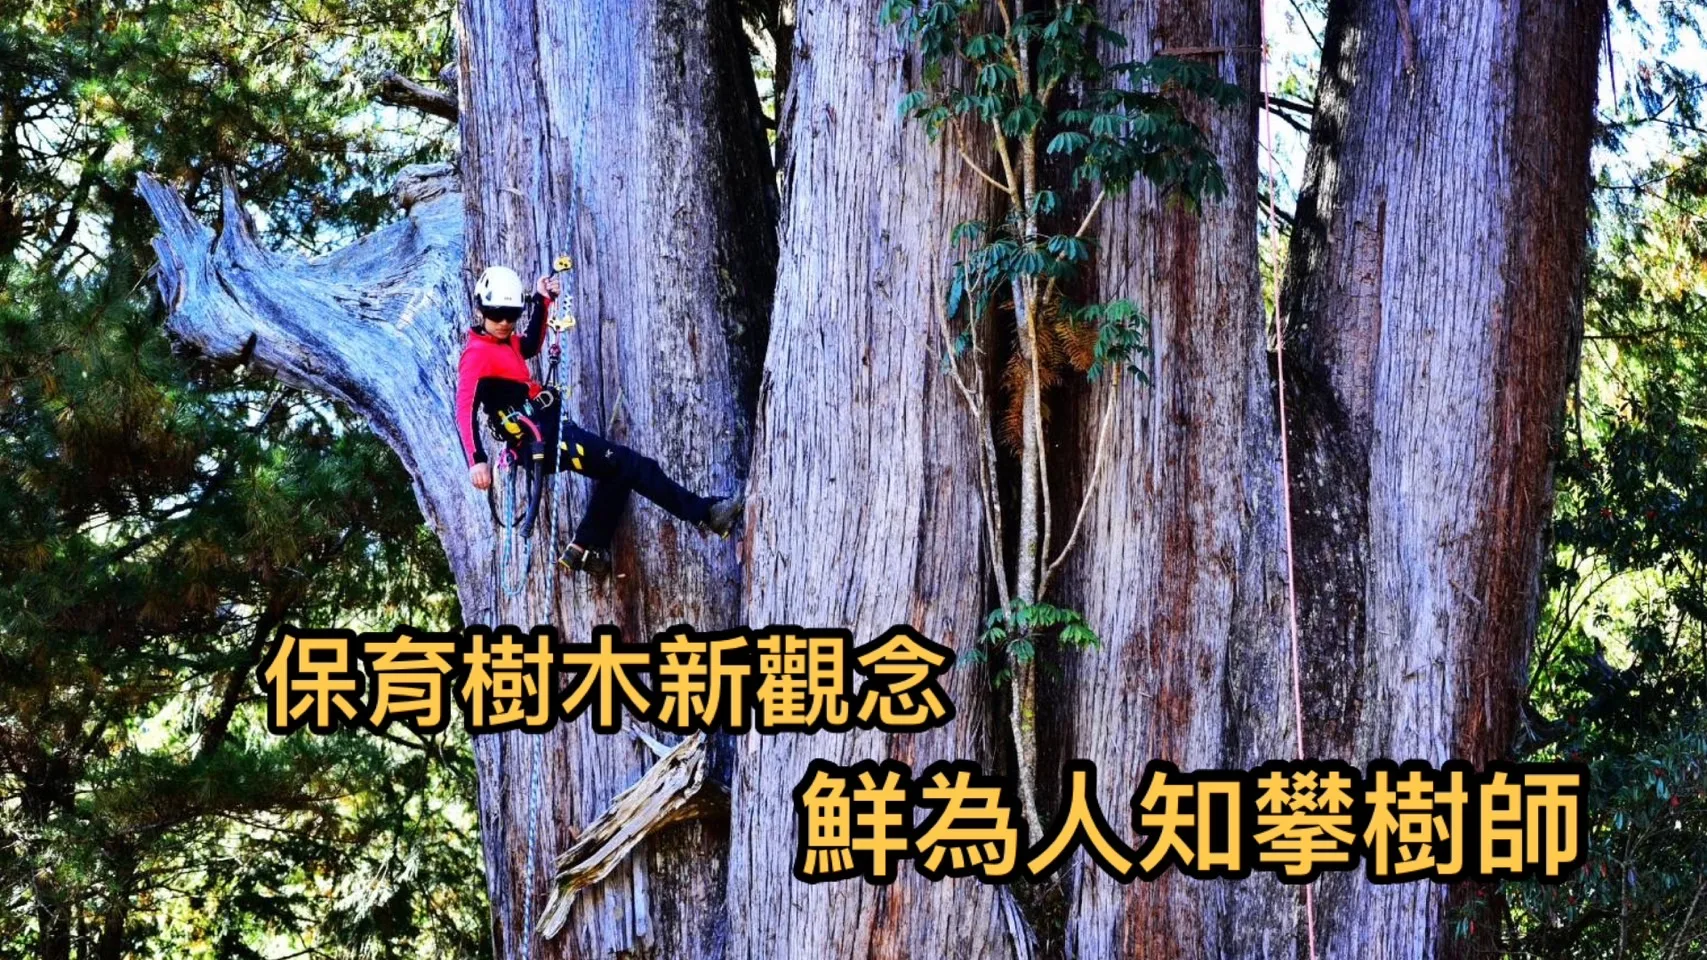 保育樹木新觀念 鮮為人知攀樹師